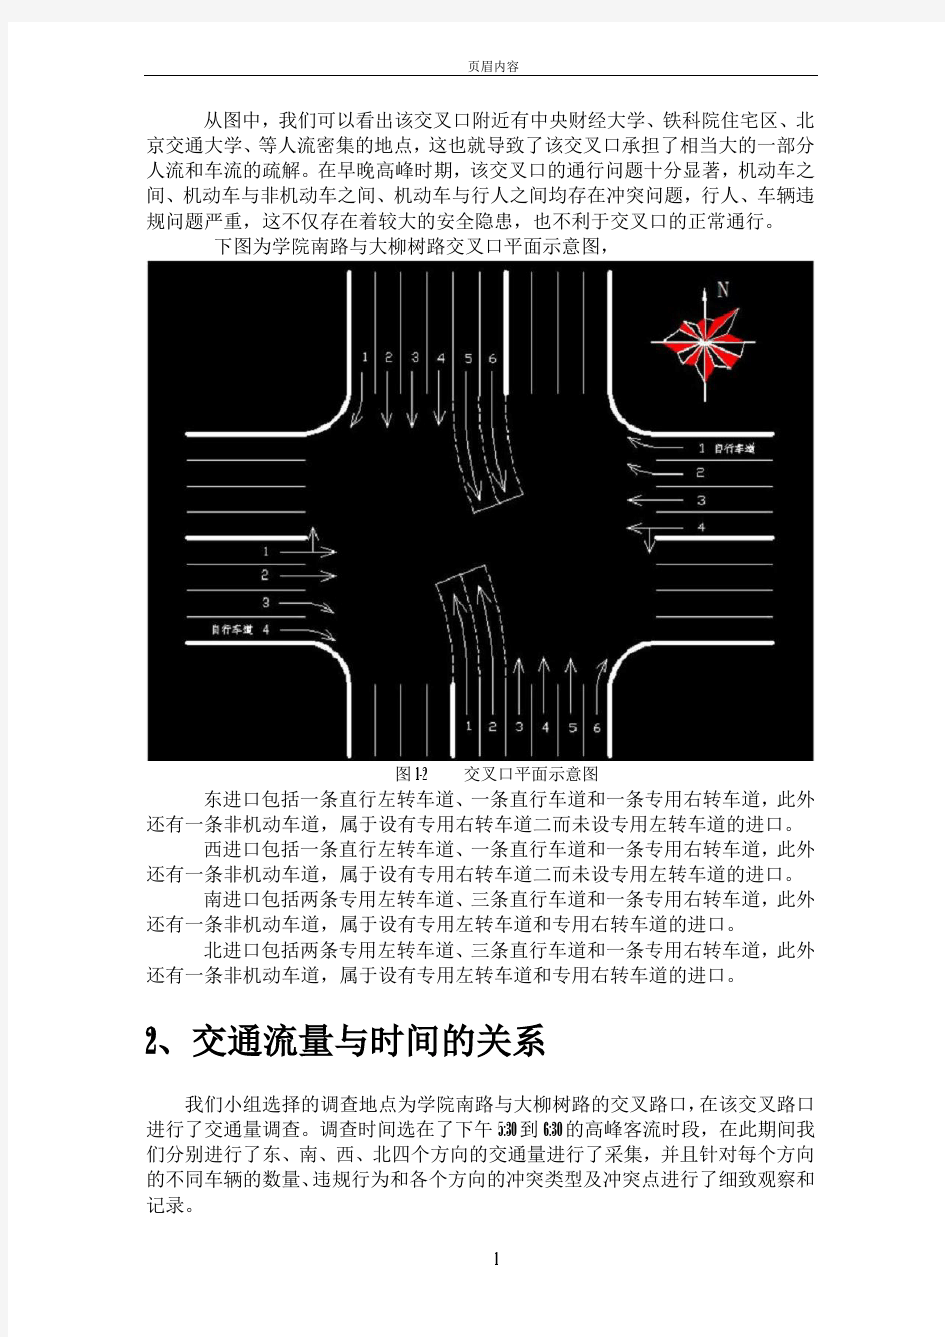 北京交通大学周边典型交叉口和路段交通安全及评价报告(学院南路与大柳树路交叉口)